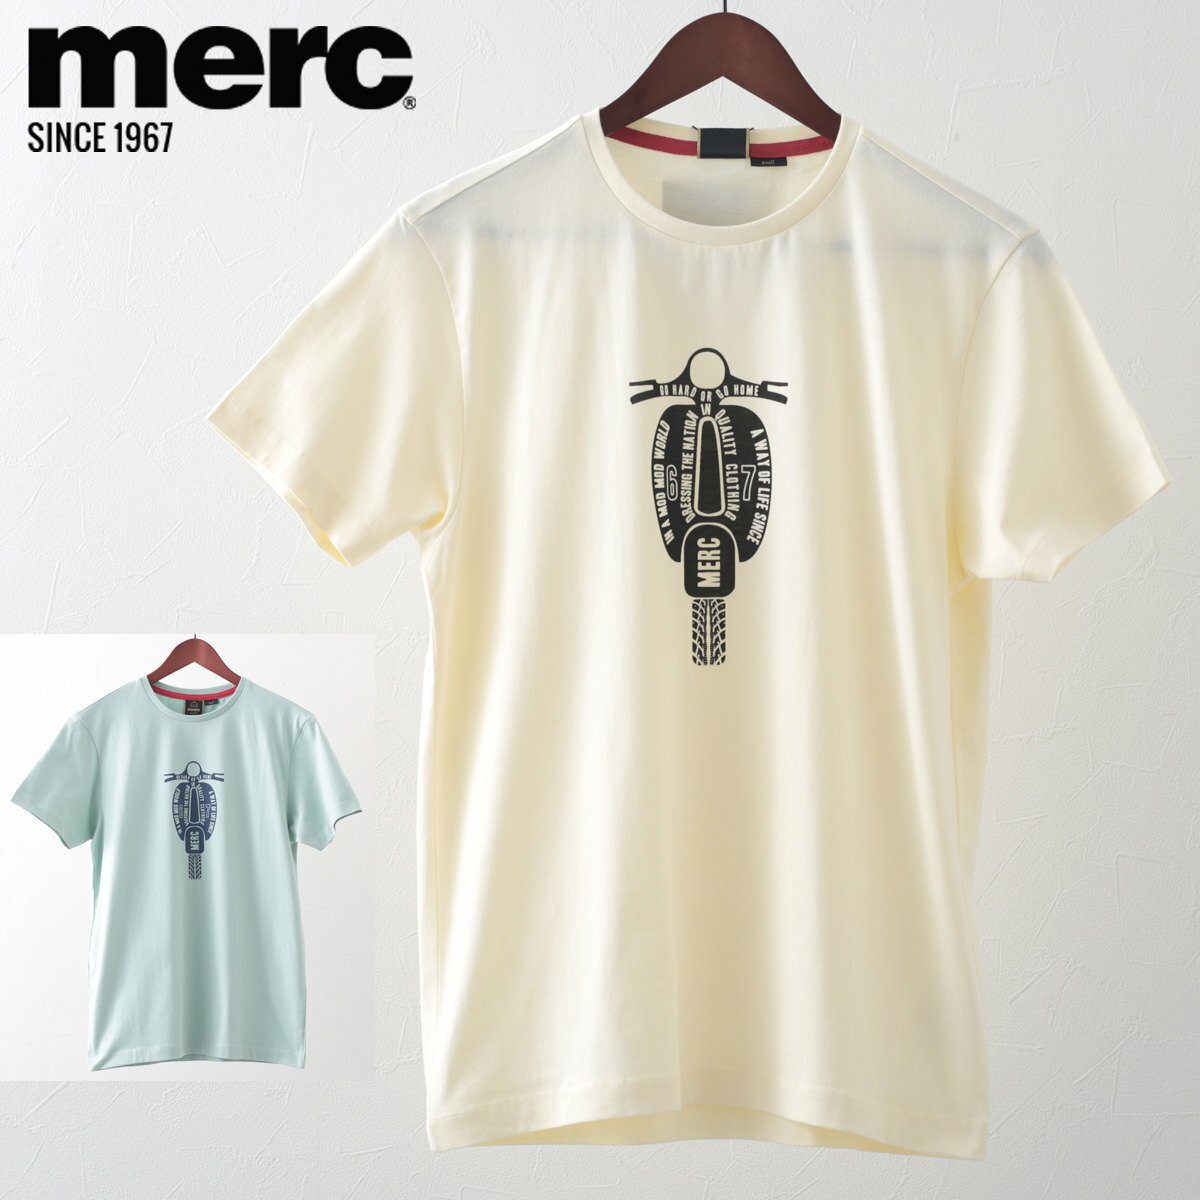 メルクロンドン メンズ Tシャツ スクーター ベスパ VASPA Merc London 20s 2色 シーグリーン クリーム レトロ ギフト トラッド